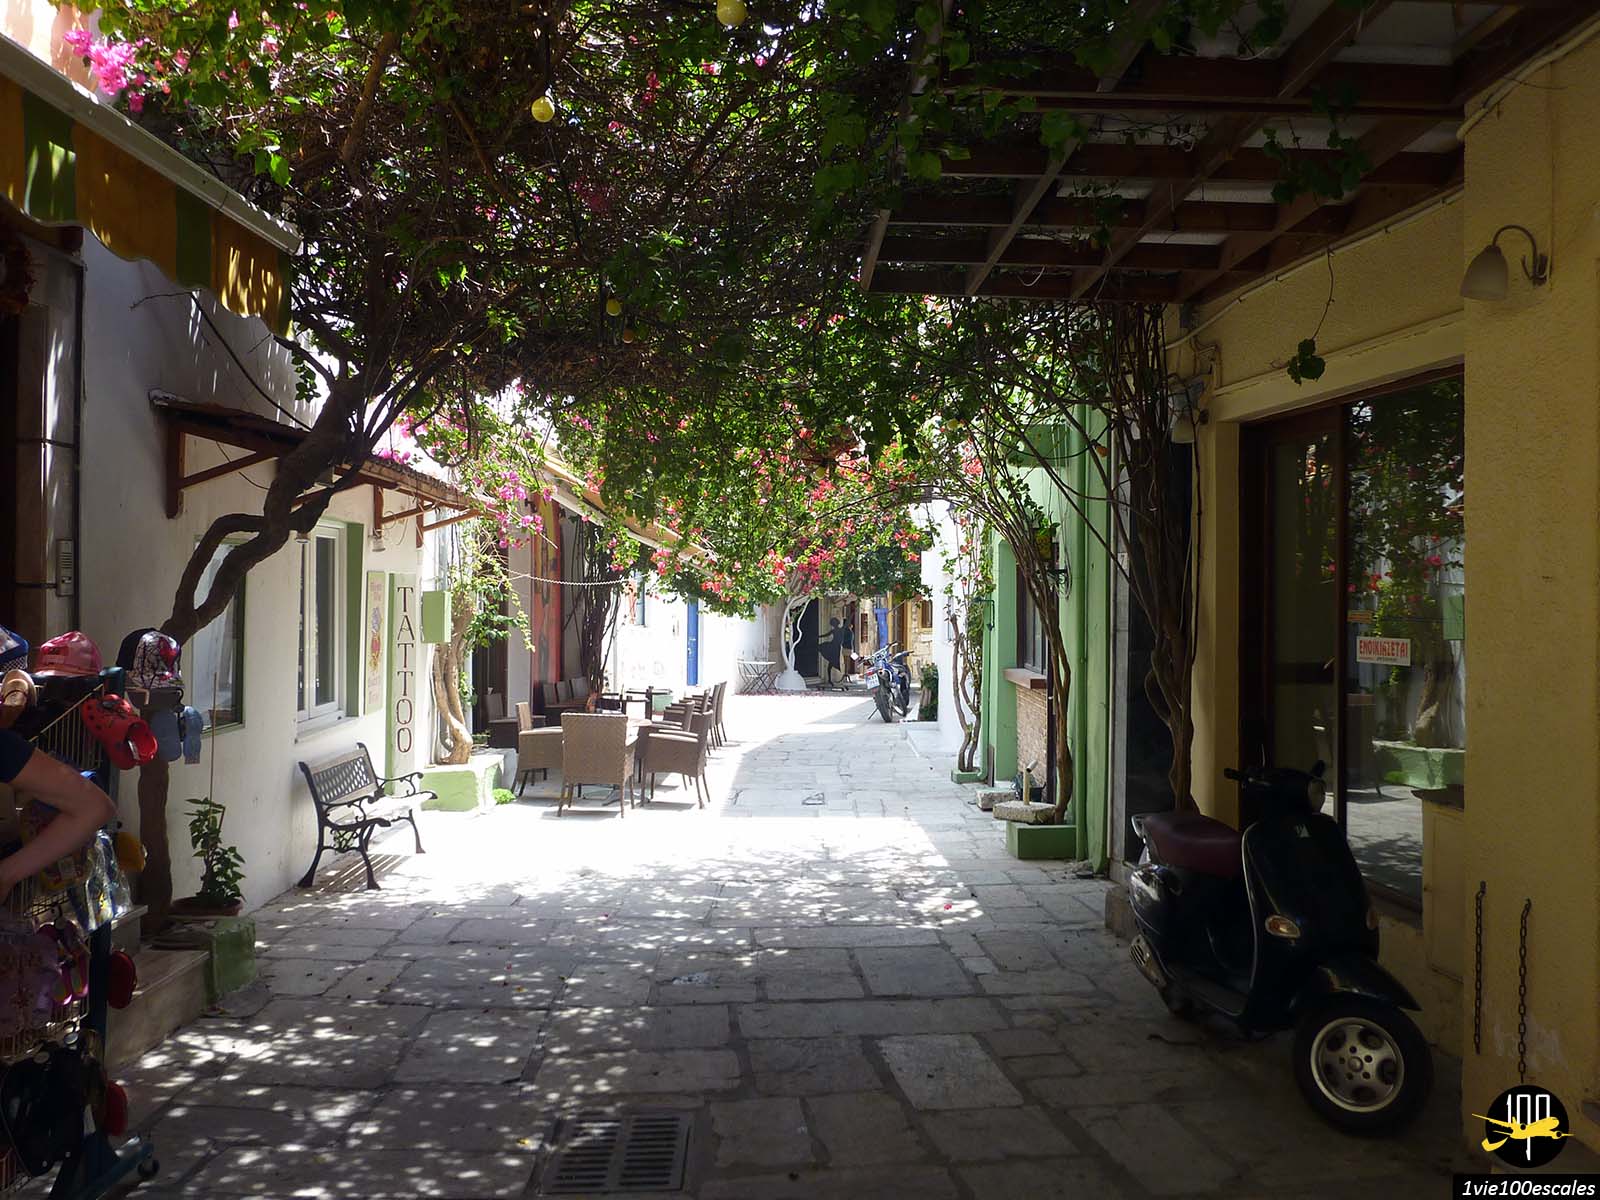 La petite ruelle Passanikolaki typique et fleurie de Kos en Grèce